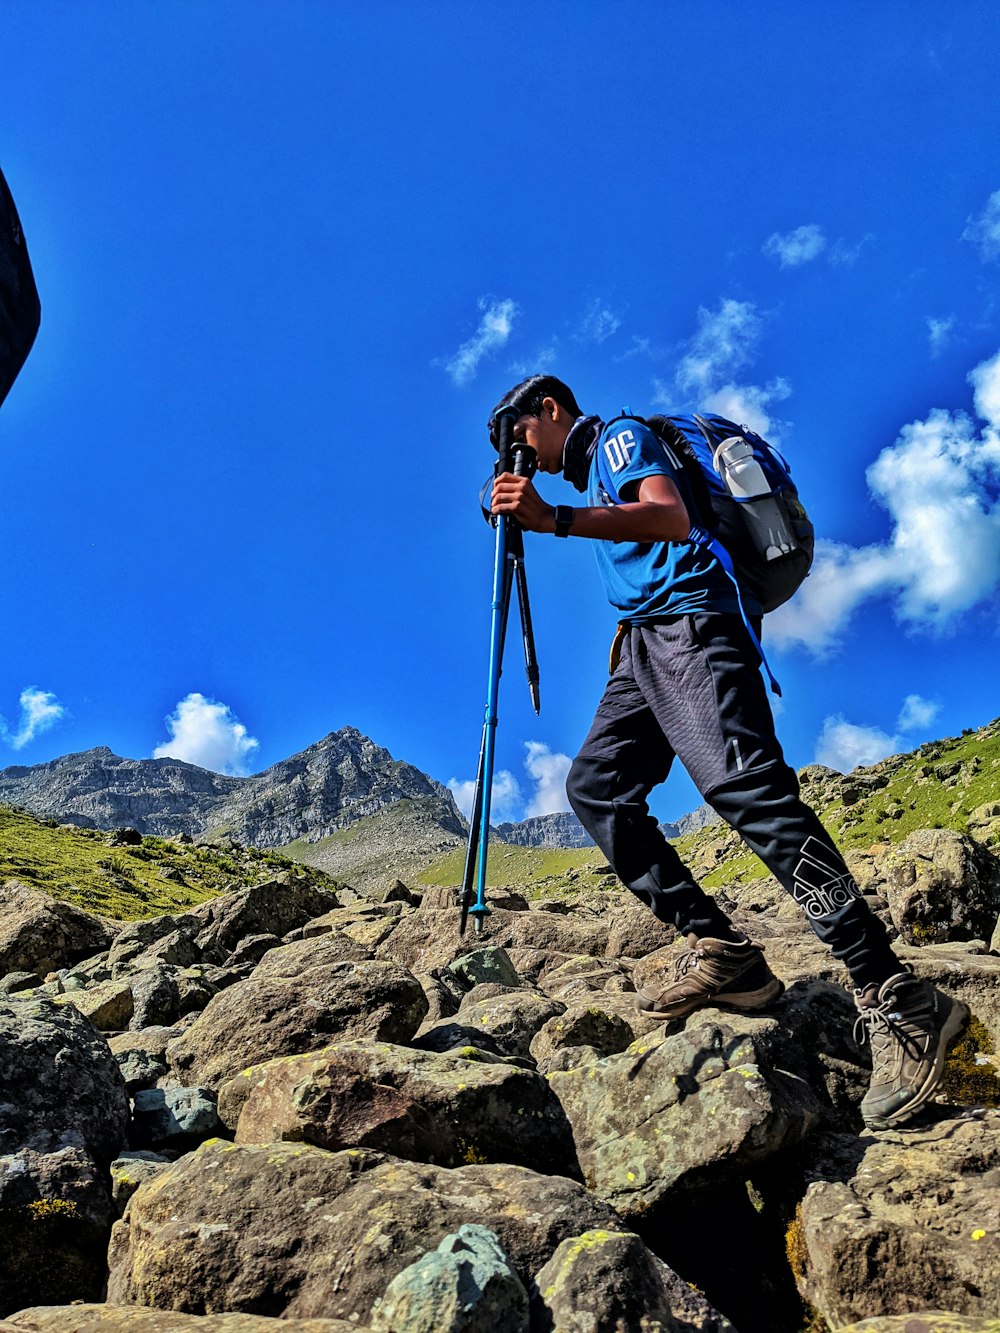 Un homme en randonnée sur une montagne rocheuse avec un sac à dos